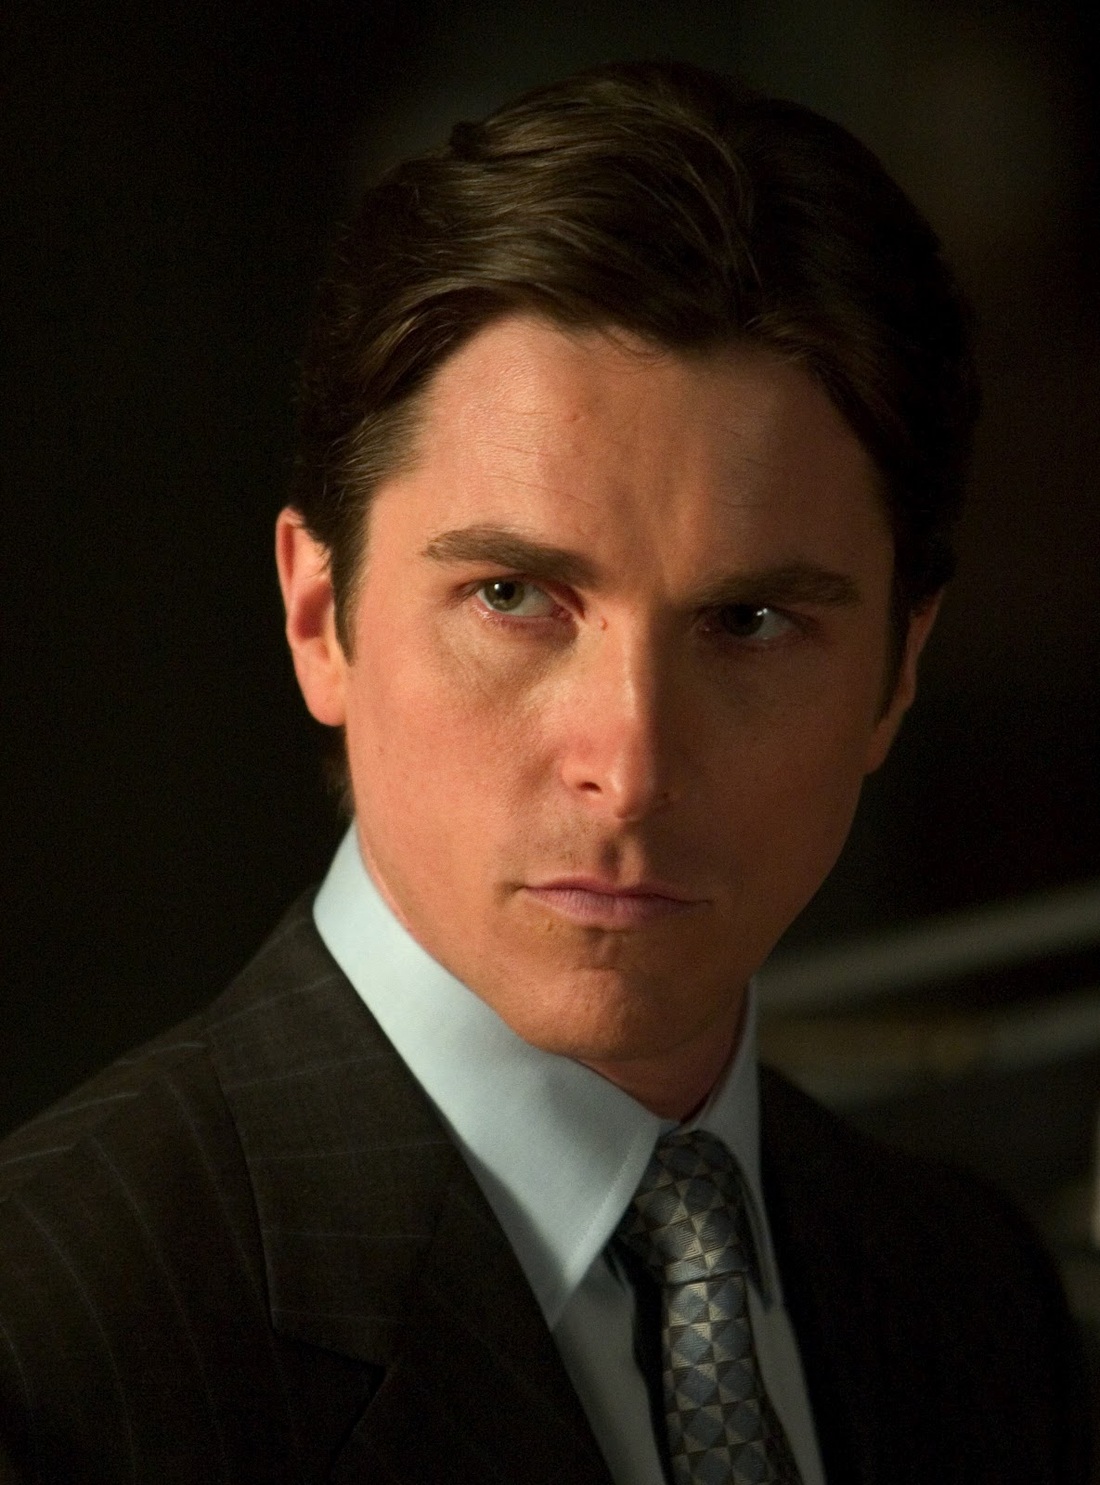 Christian Bale as Bruce Wayne / Batman